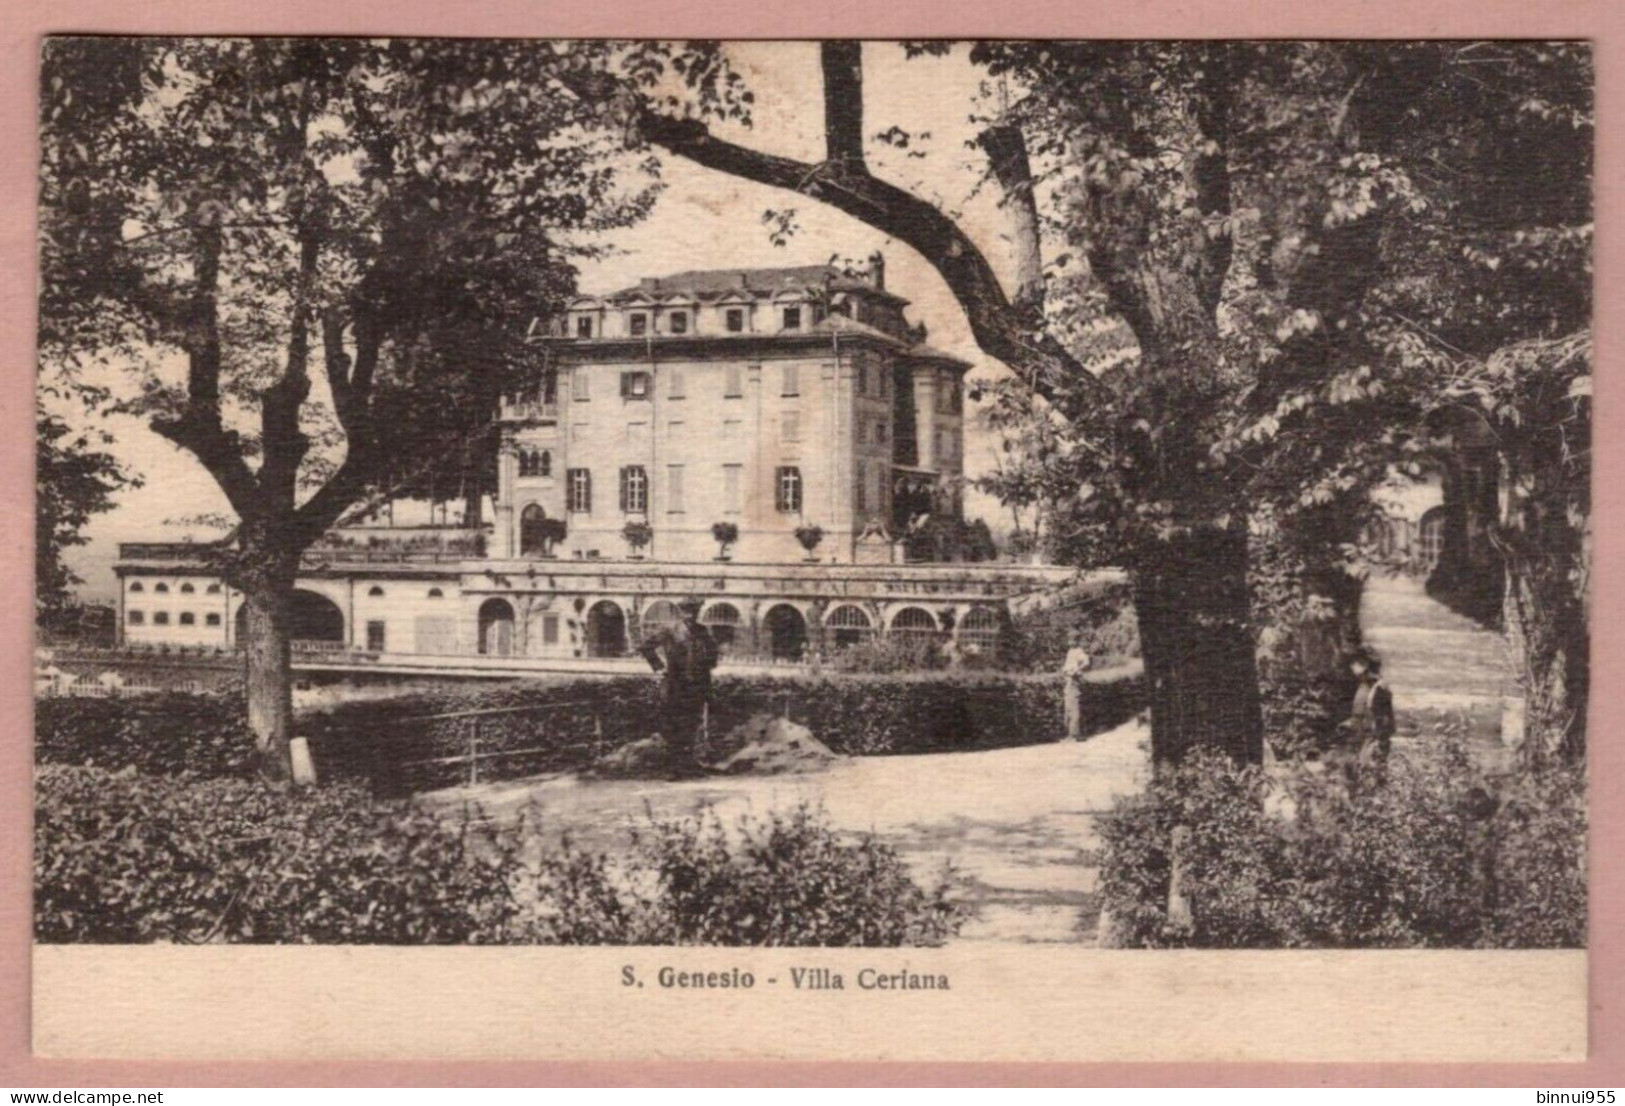 Cartolina Torino S. Genesio Villa Ceriana - Viaggiata - Panoramic Views